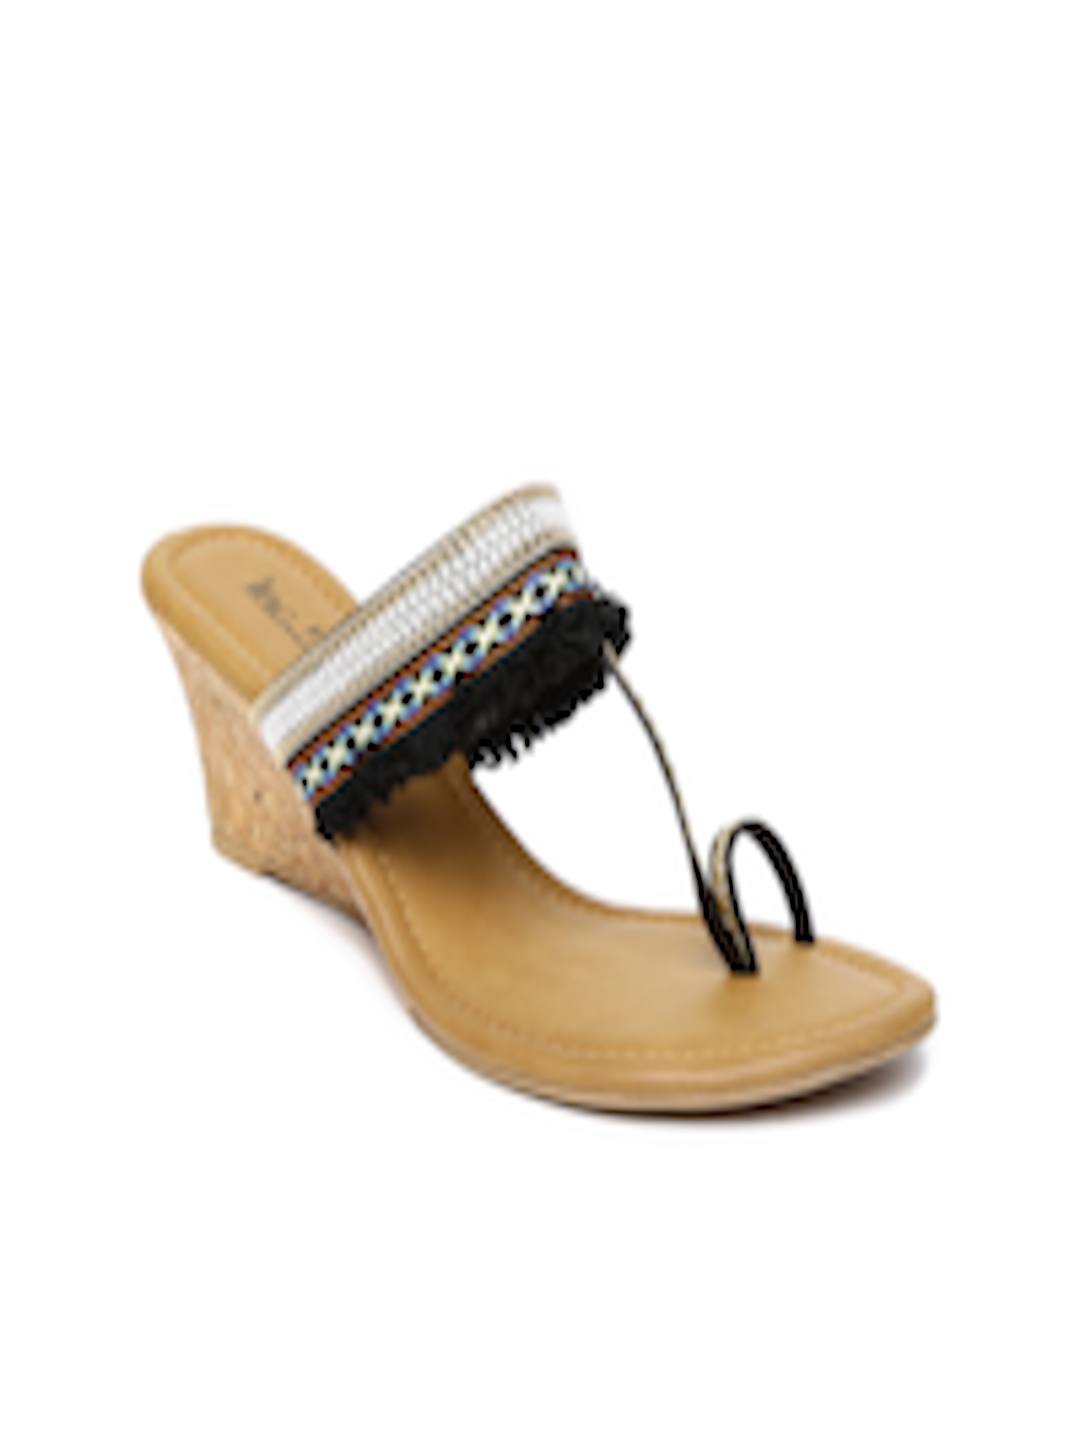 Buy Inc 5 Women Black Solid Sandals - Heels for Women 2336010 | Myntra